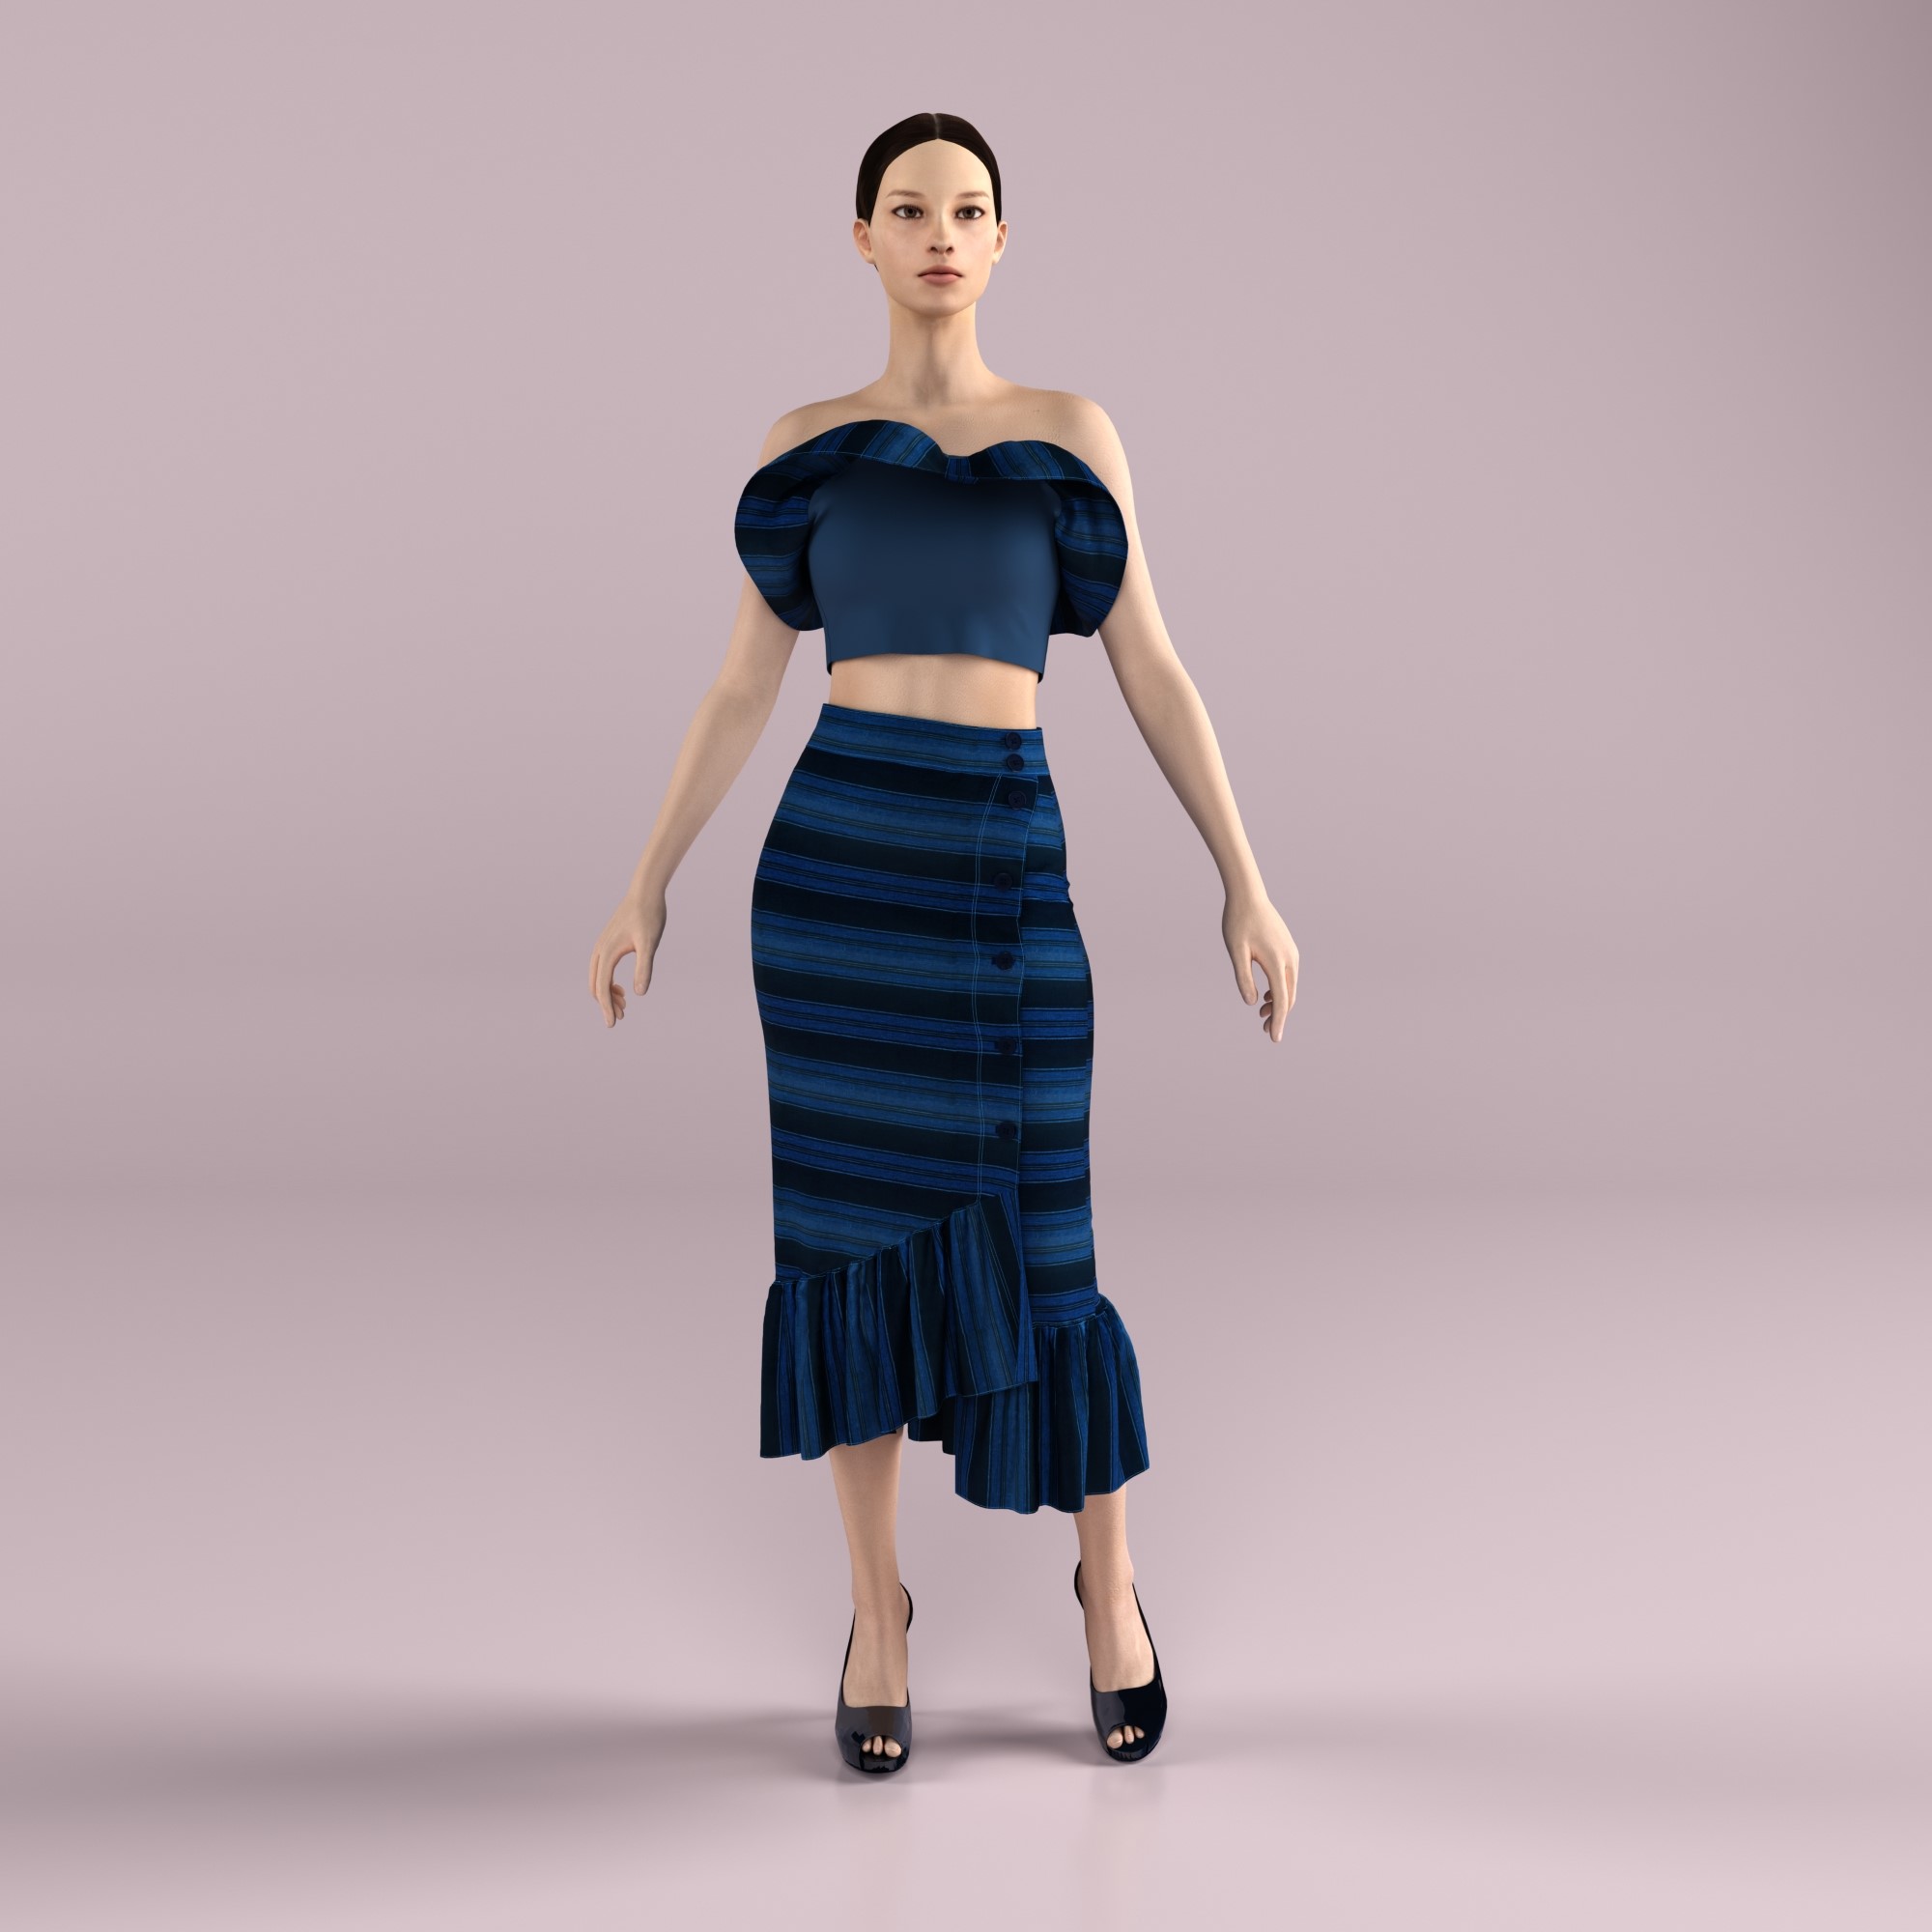 Beginner CLO3D and Marvelous Design for 3D Garment - Designer ...